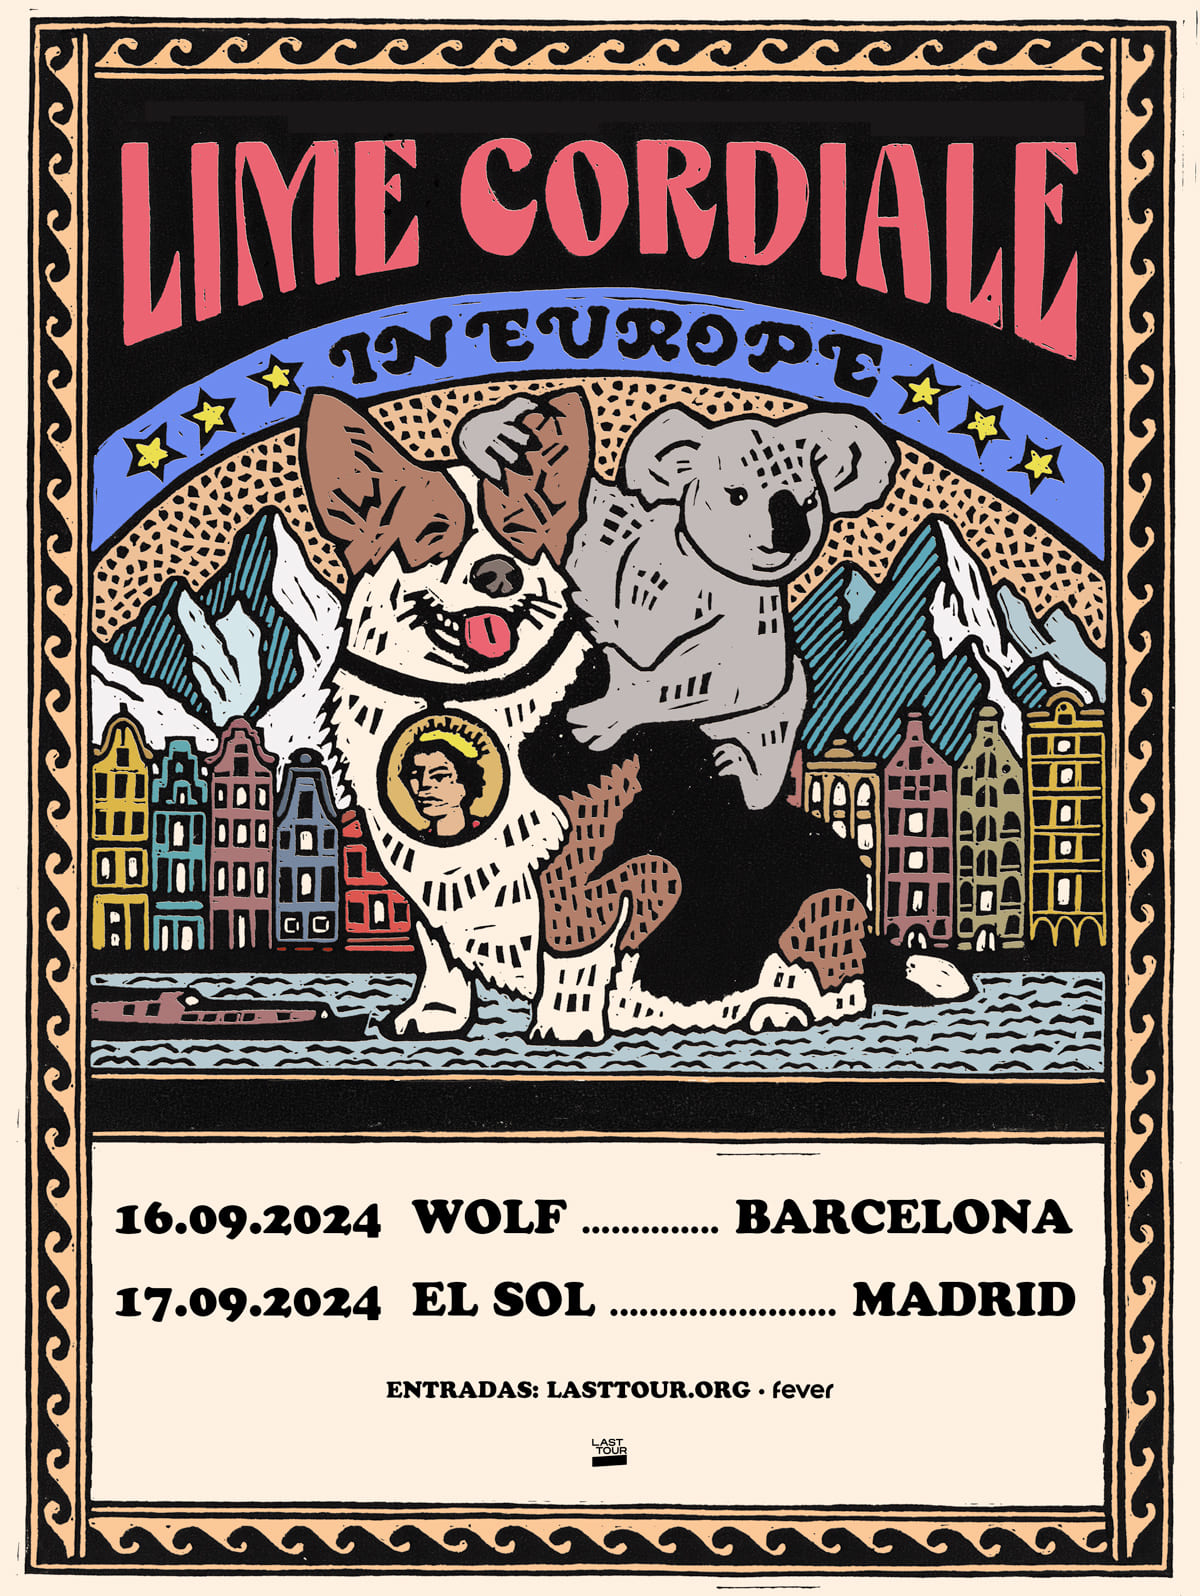 Poster de Lime Cordiale para sus conciertos en Madrid y Barcelona